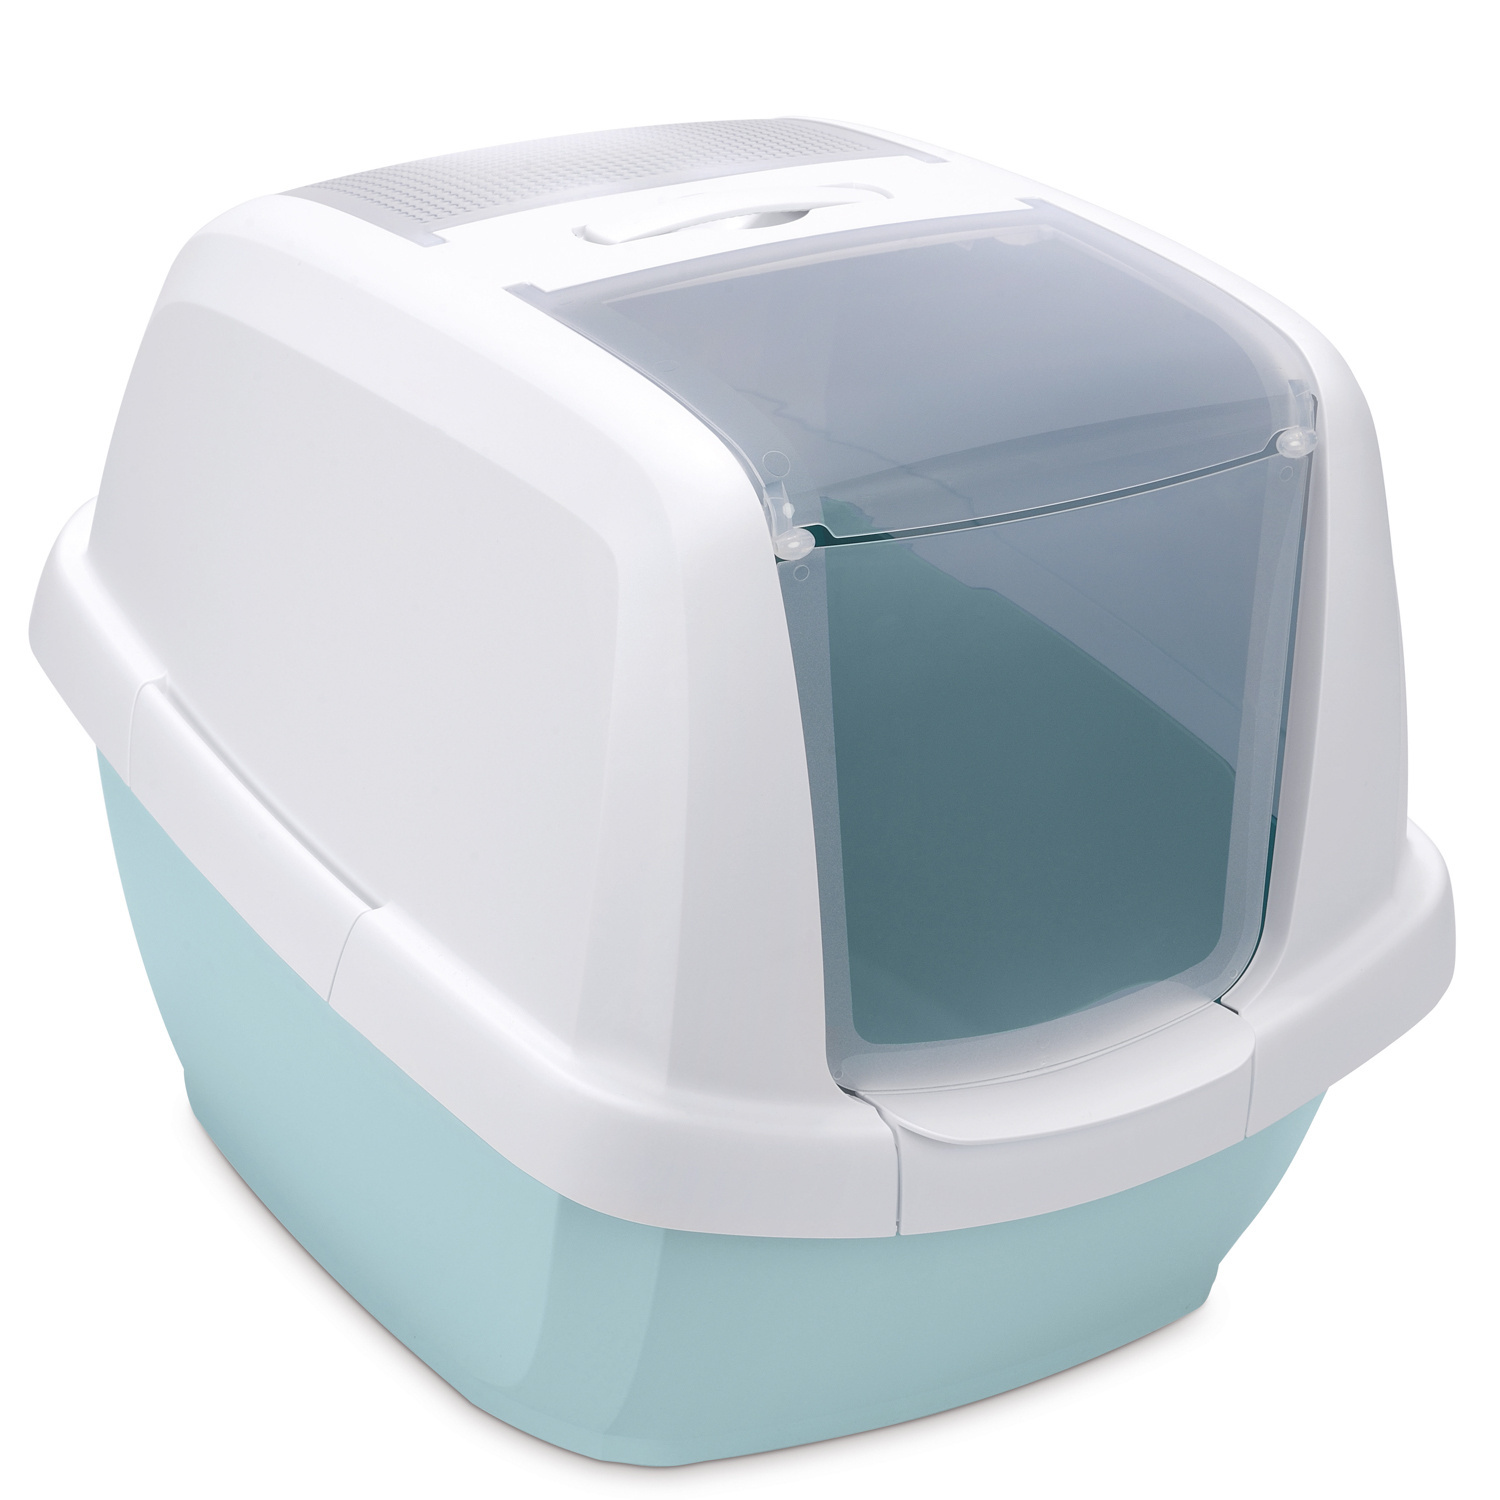 IMAC IMAC био-туалет для кошек , белый/цвет морской волны (2,85 кг) imac imac био туалет для кошек белый бежевый 2 85 кг